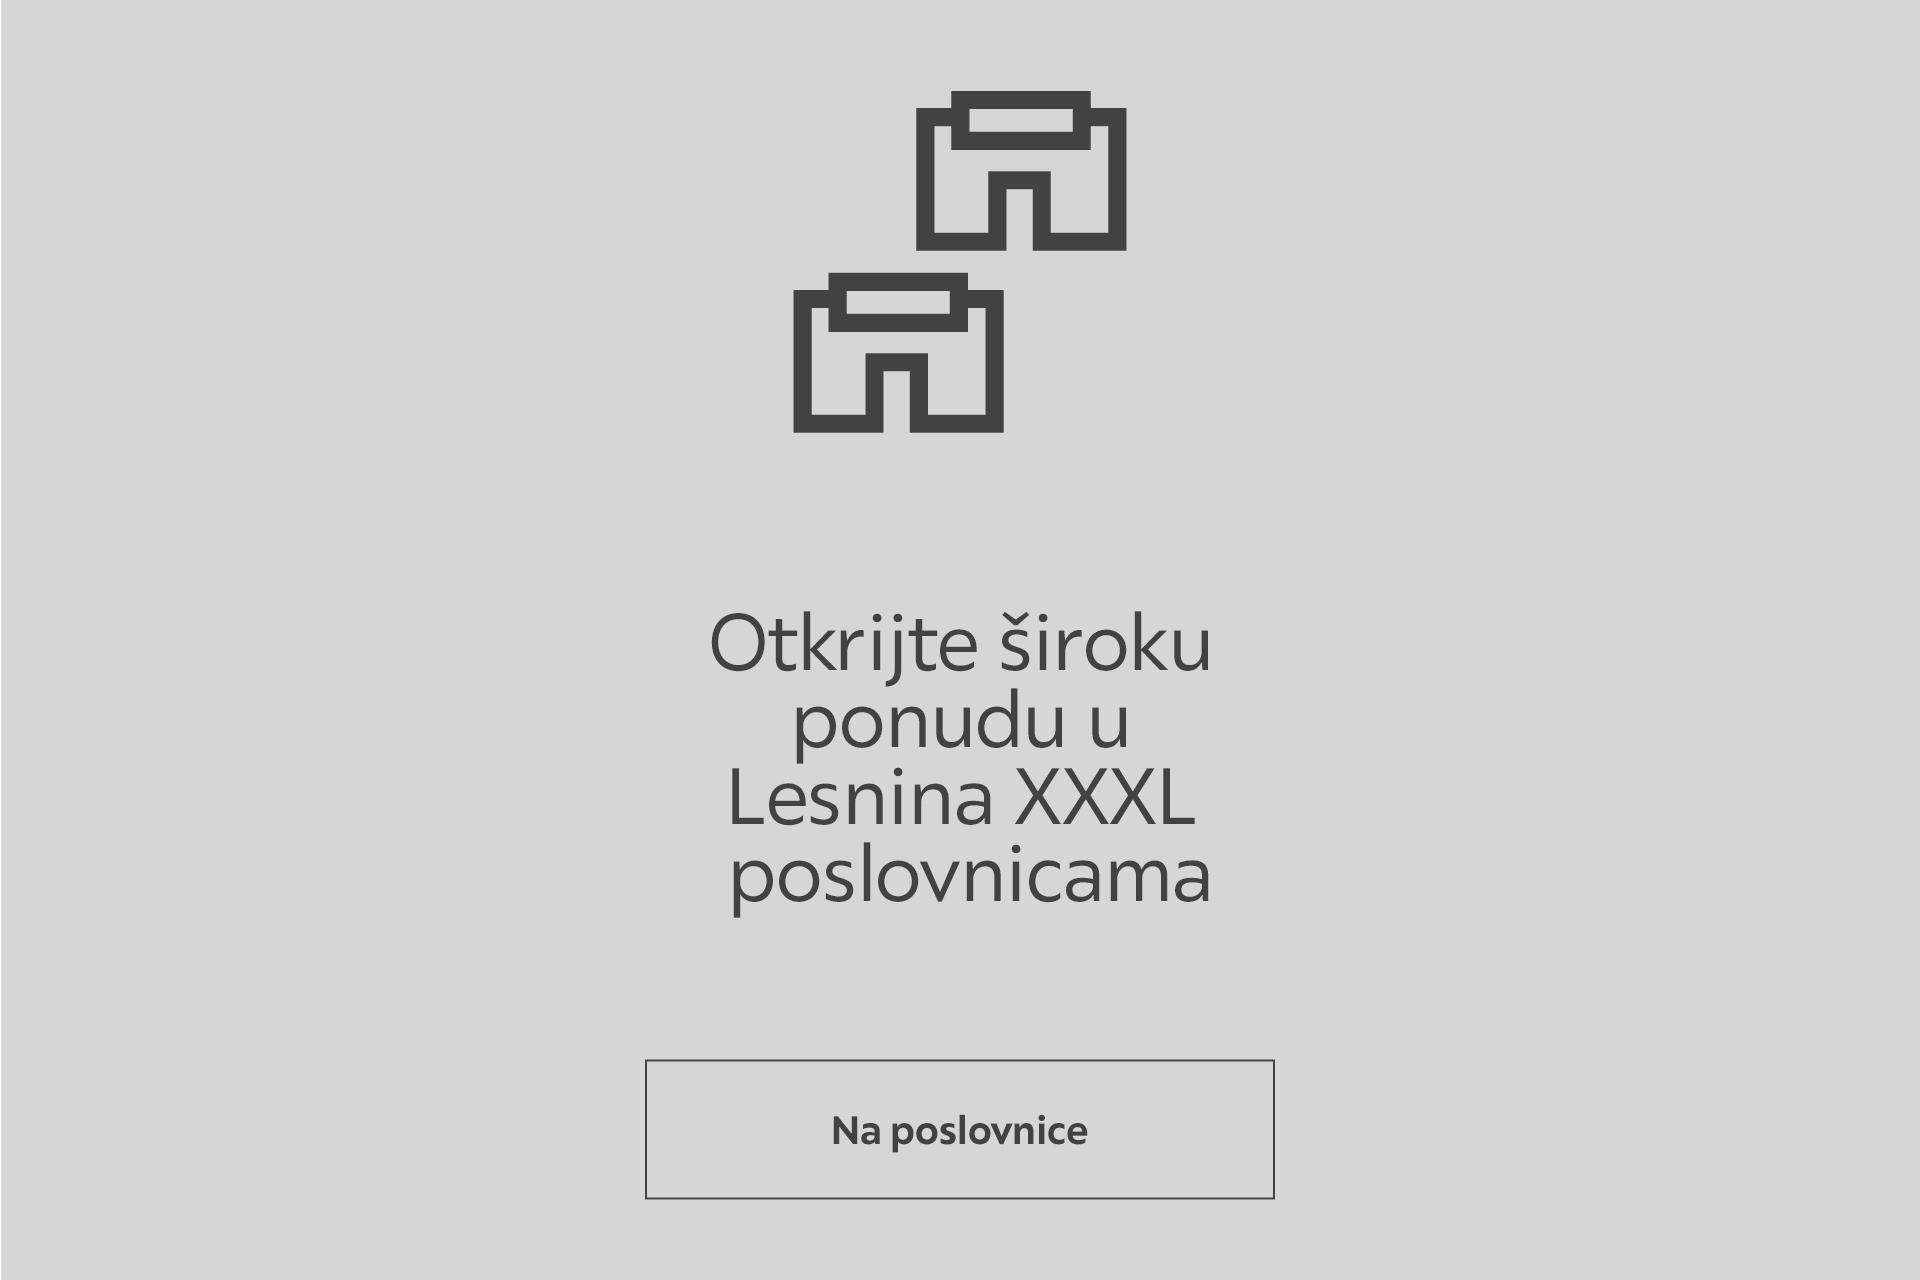 معادلة الاستغناء حزين  Stropna rasvjeta - kupite u webshopu - Lesnina XXXL